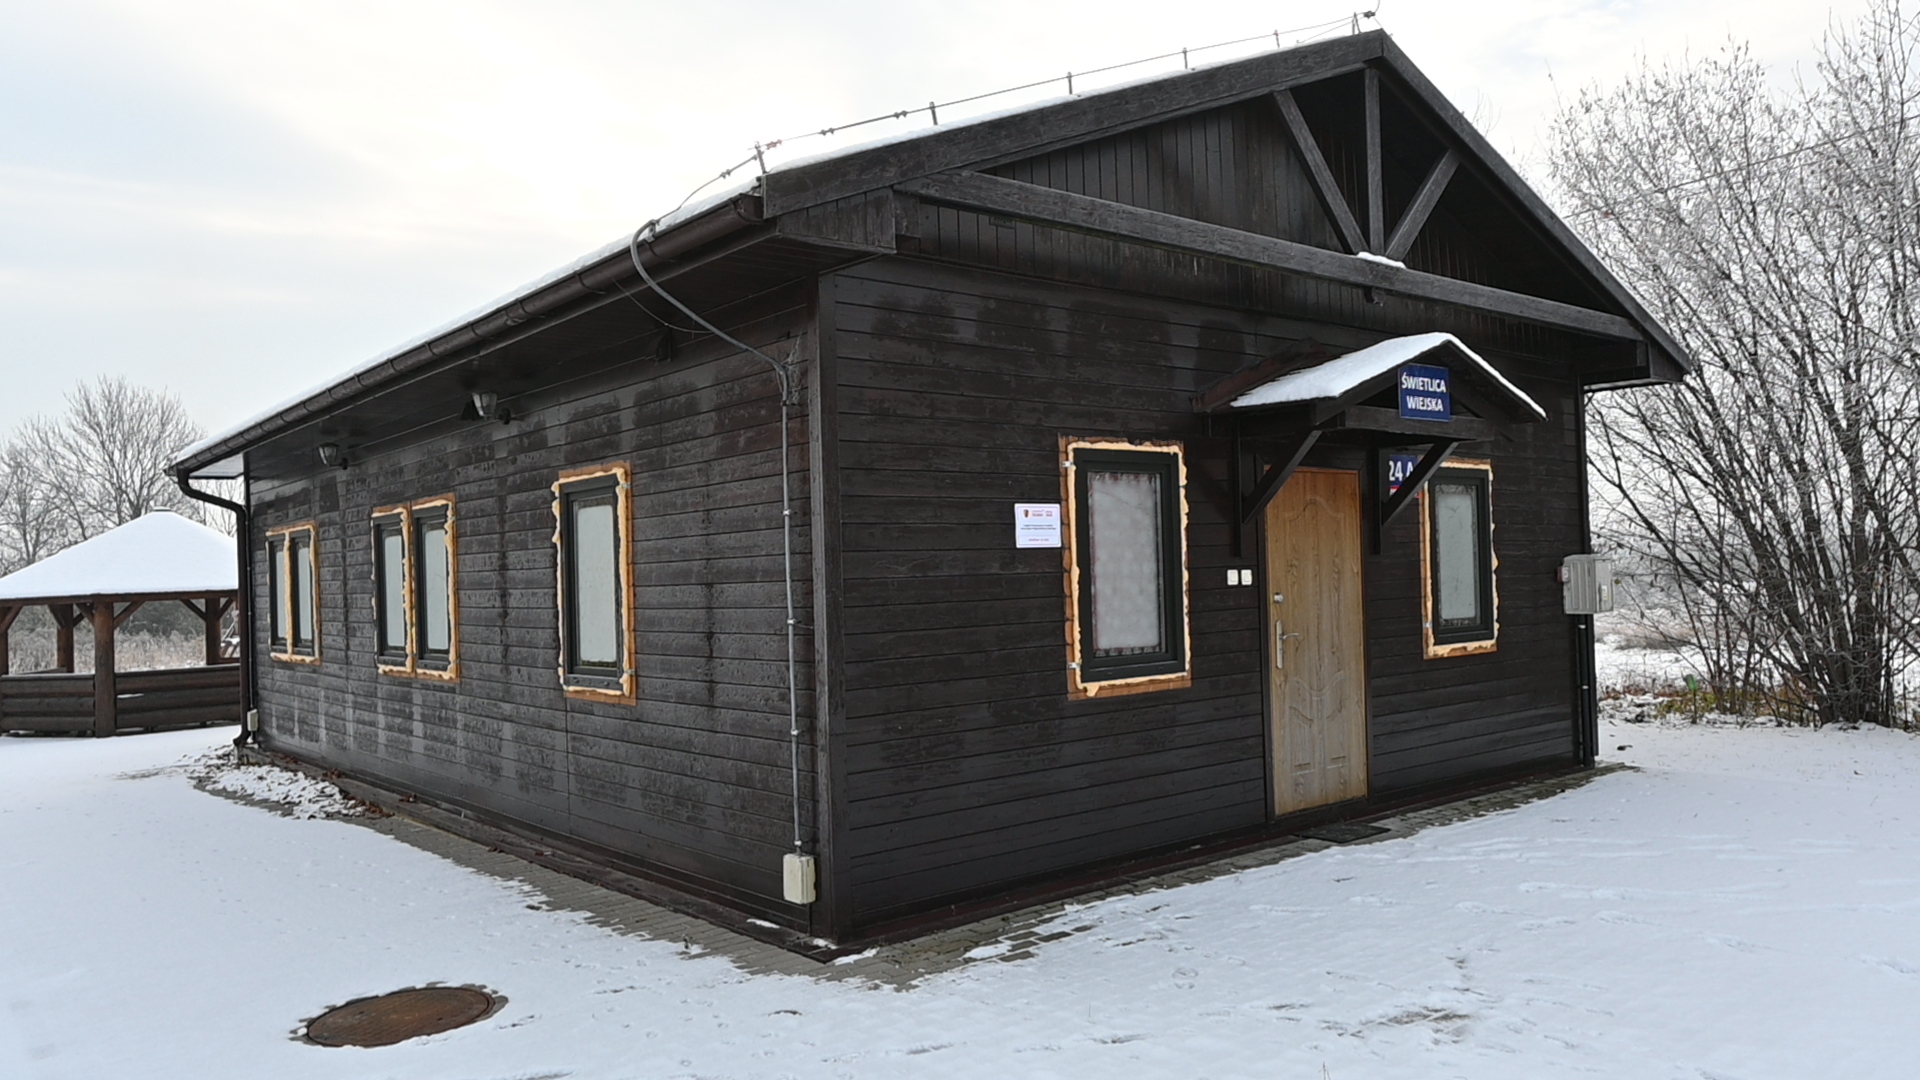 Drewniany budynek stacji kolejowej pokryty śniegiem, z oznakowaniem "Biletomat" i "WC", w zimowym krajobrazie.